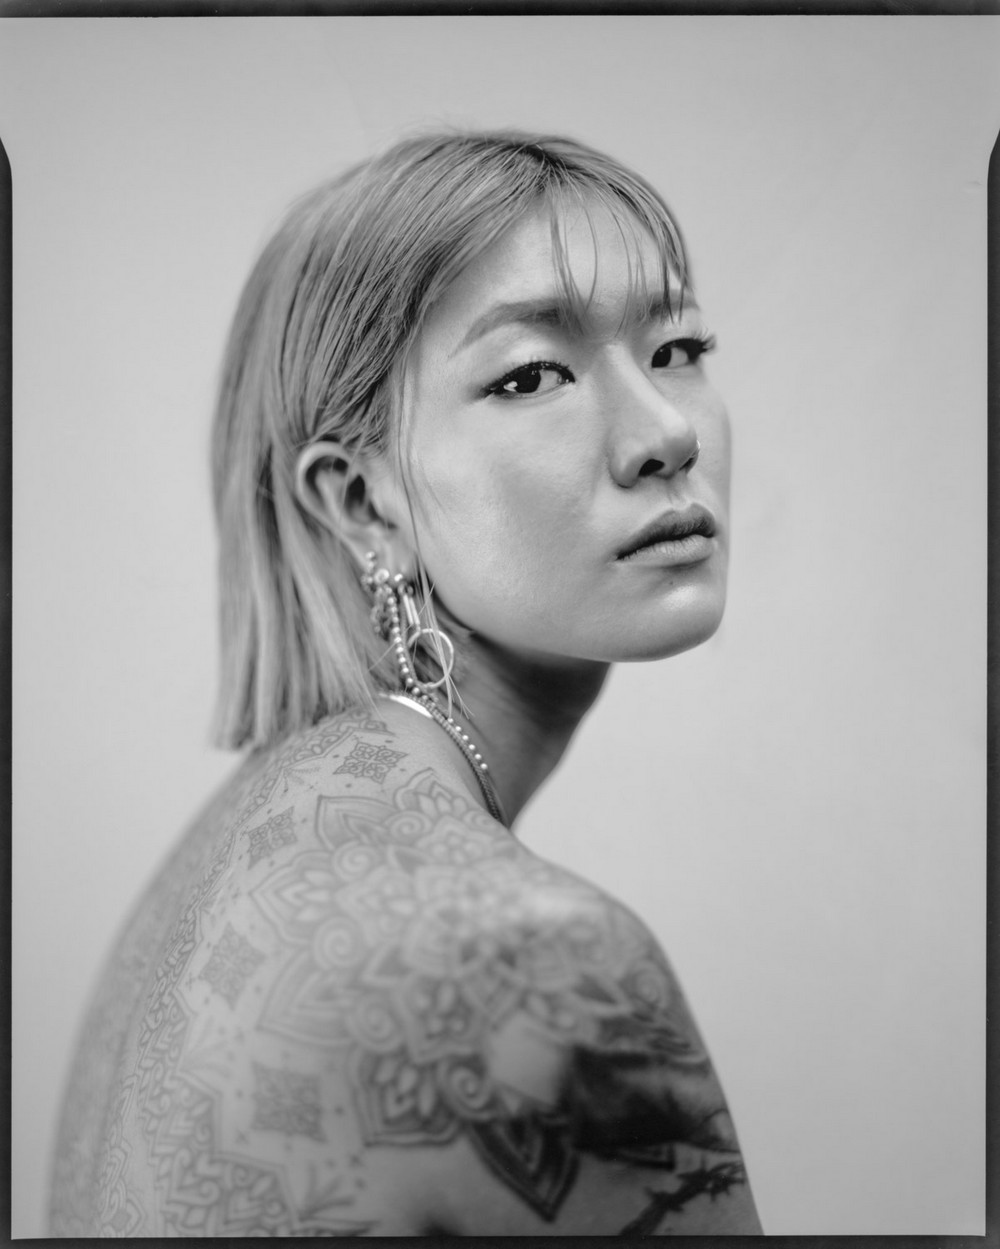 Татуировки жителей Южной Кореи на снимках Тима Франко